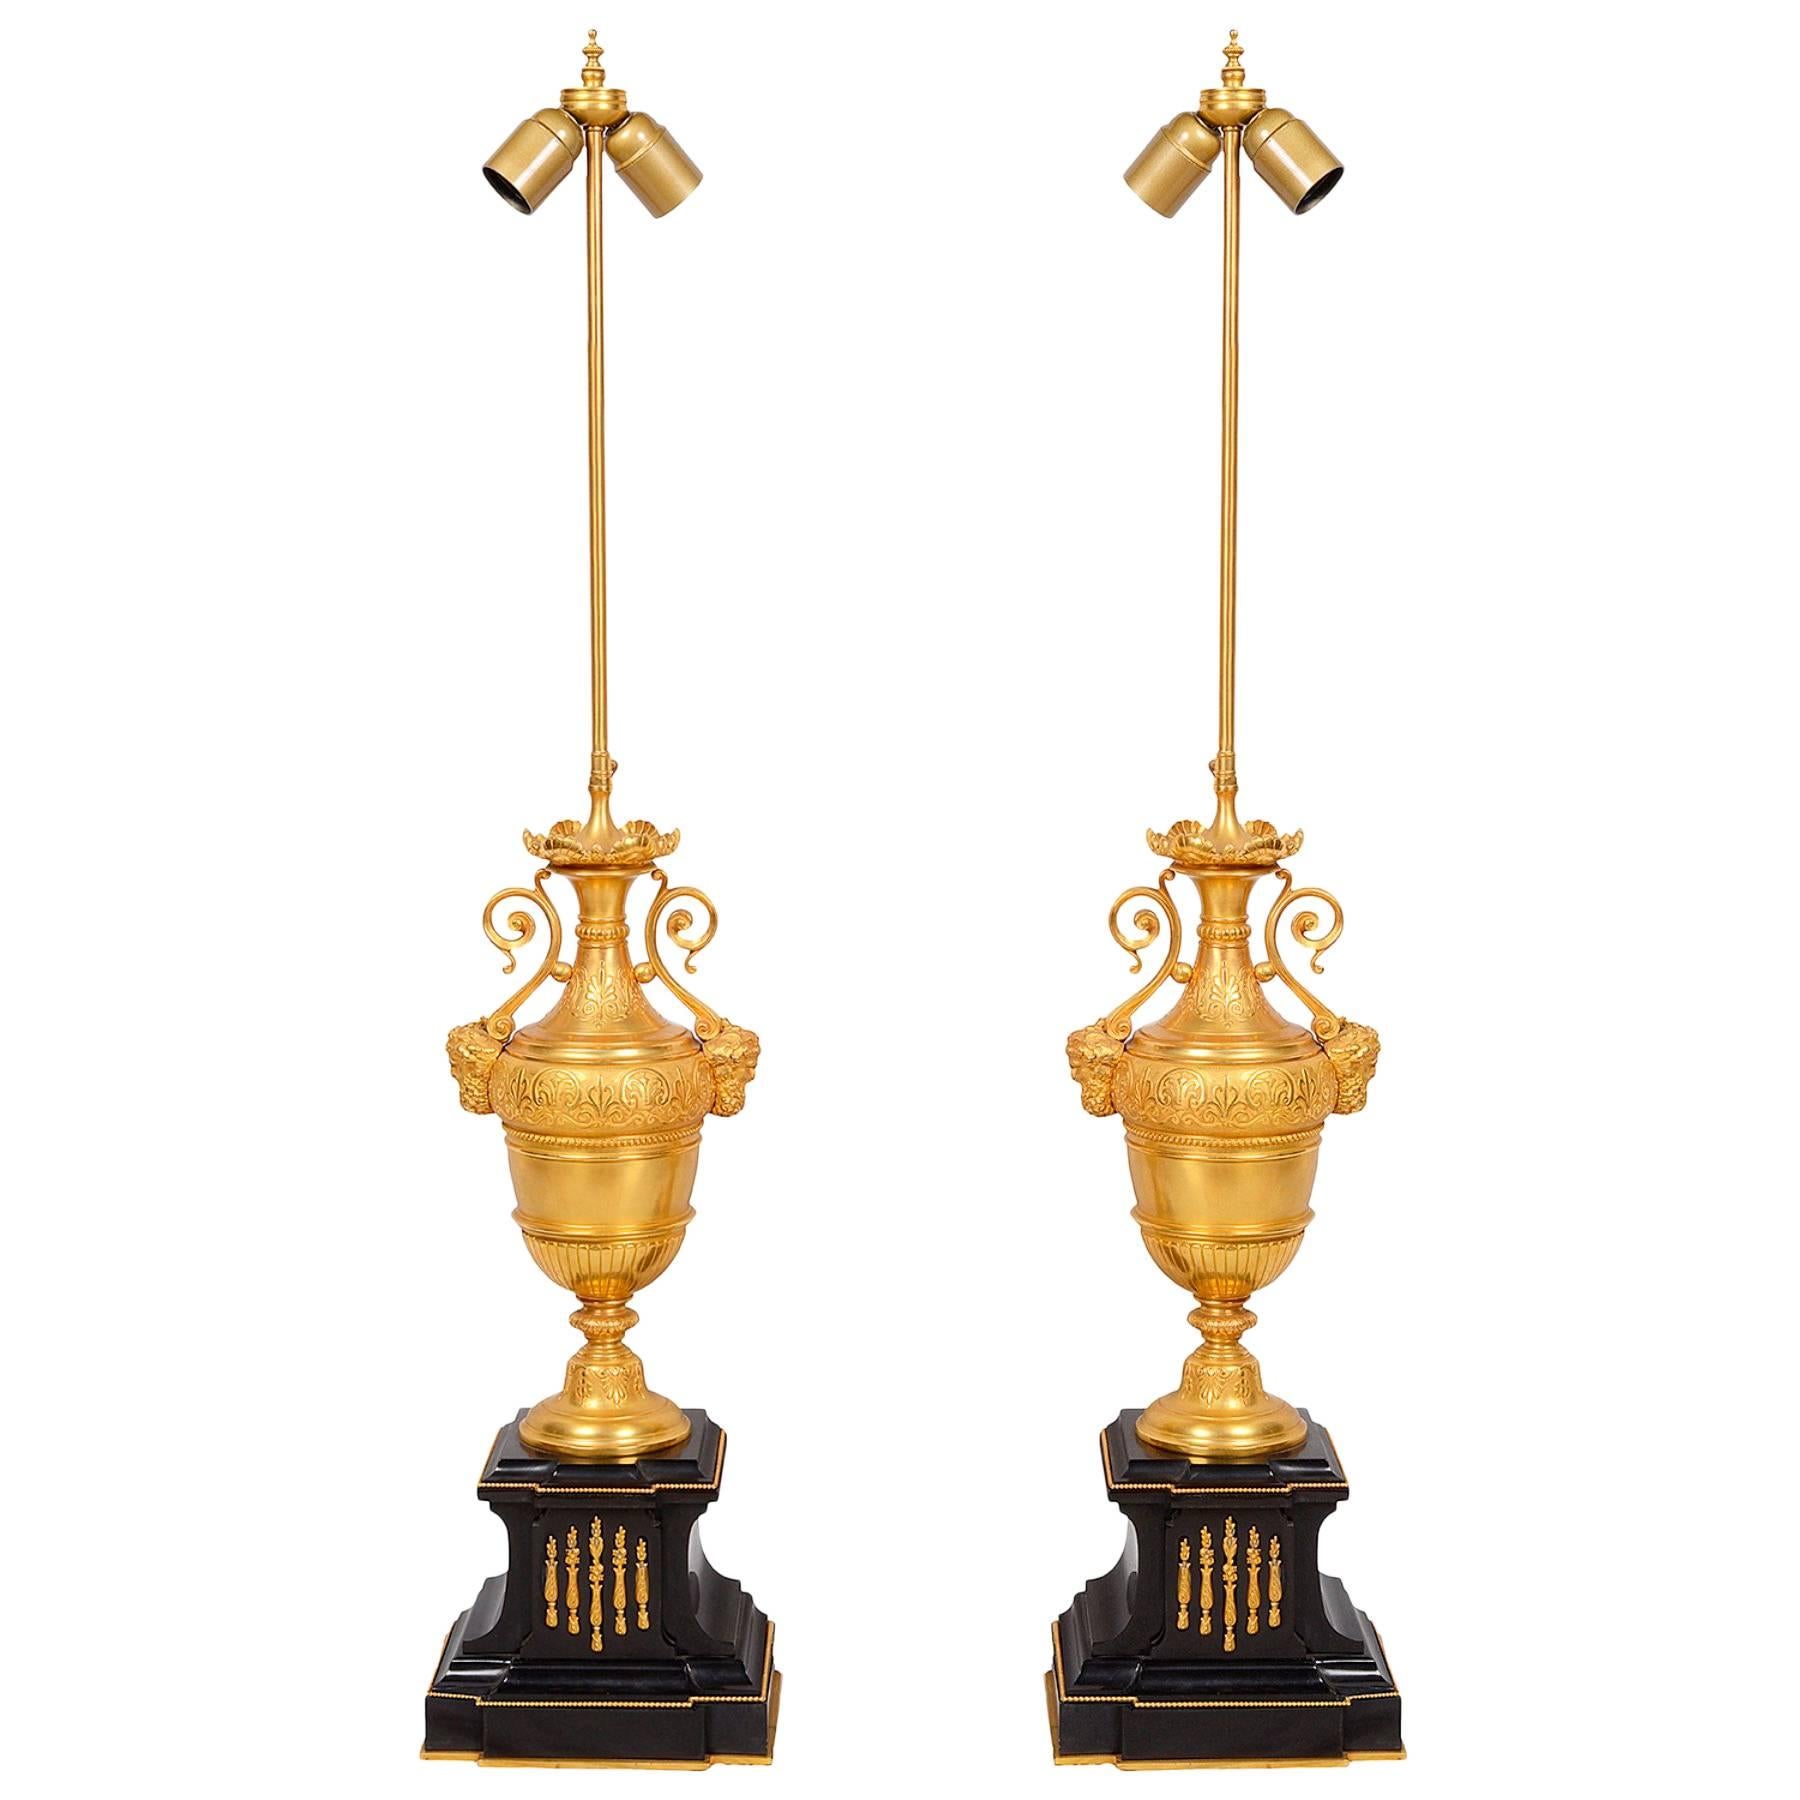 Une paire de lampes classiques en bronze doré et marbre, chacune avec des poignées à volutes et des montures en forme de masque barbu.